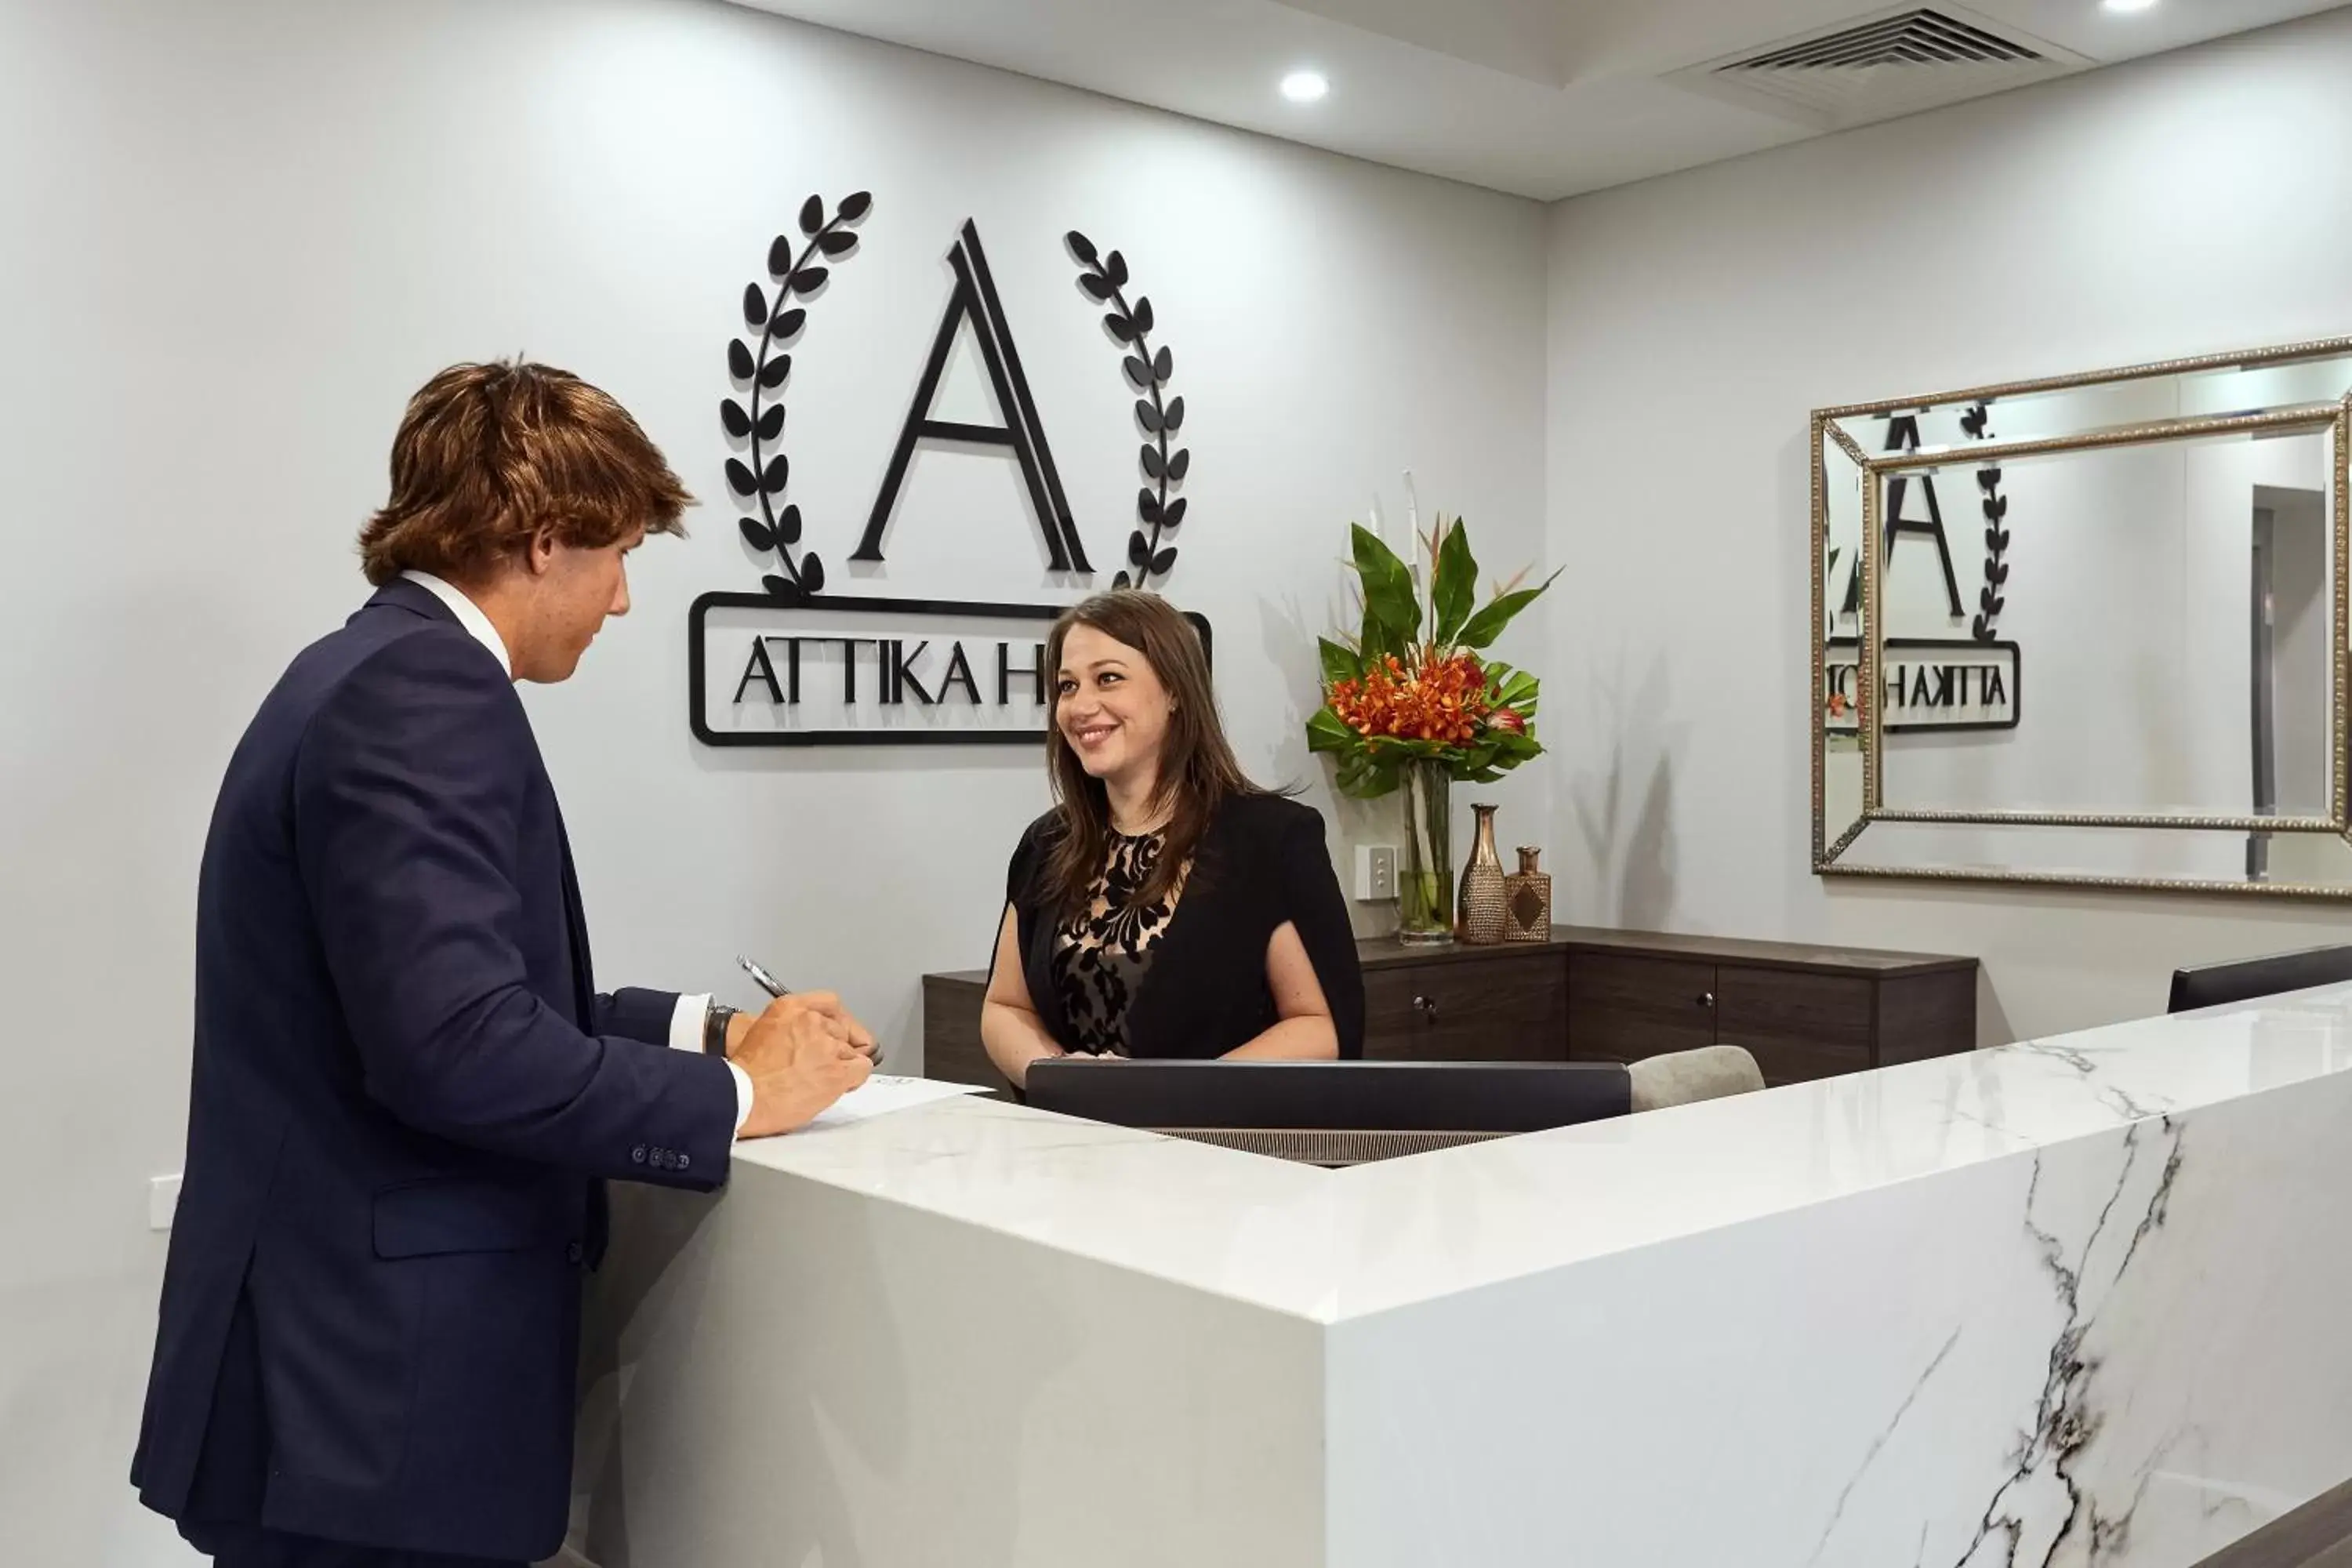 Staff, Lobby/Reception in Attika Hotel